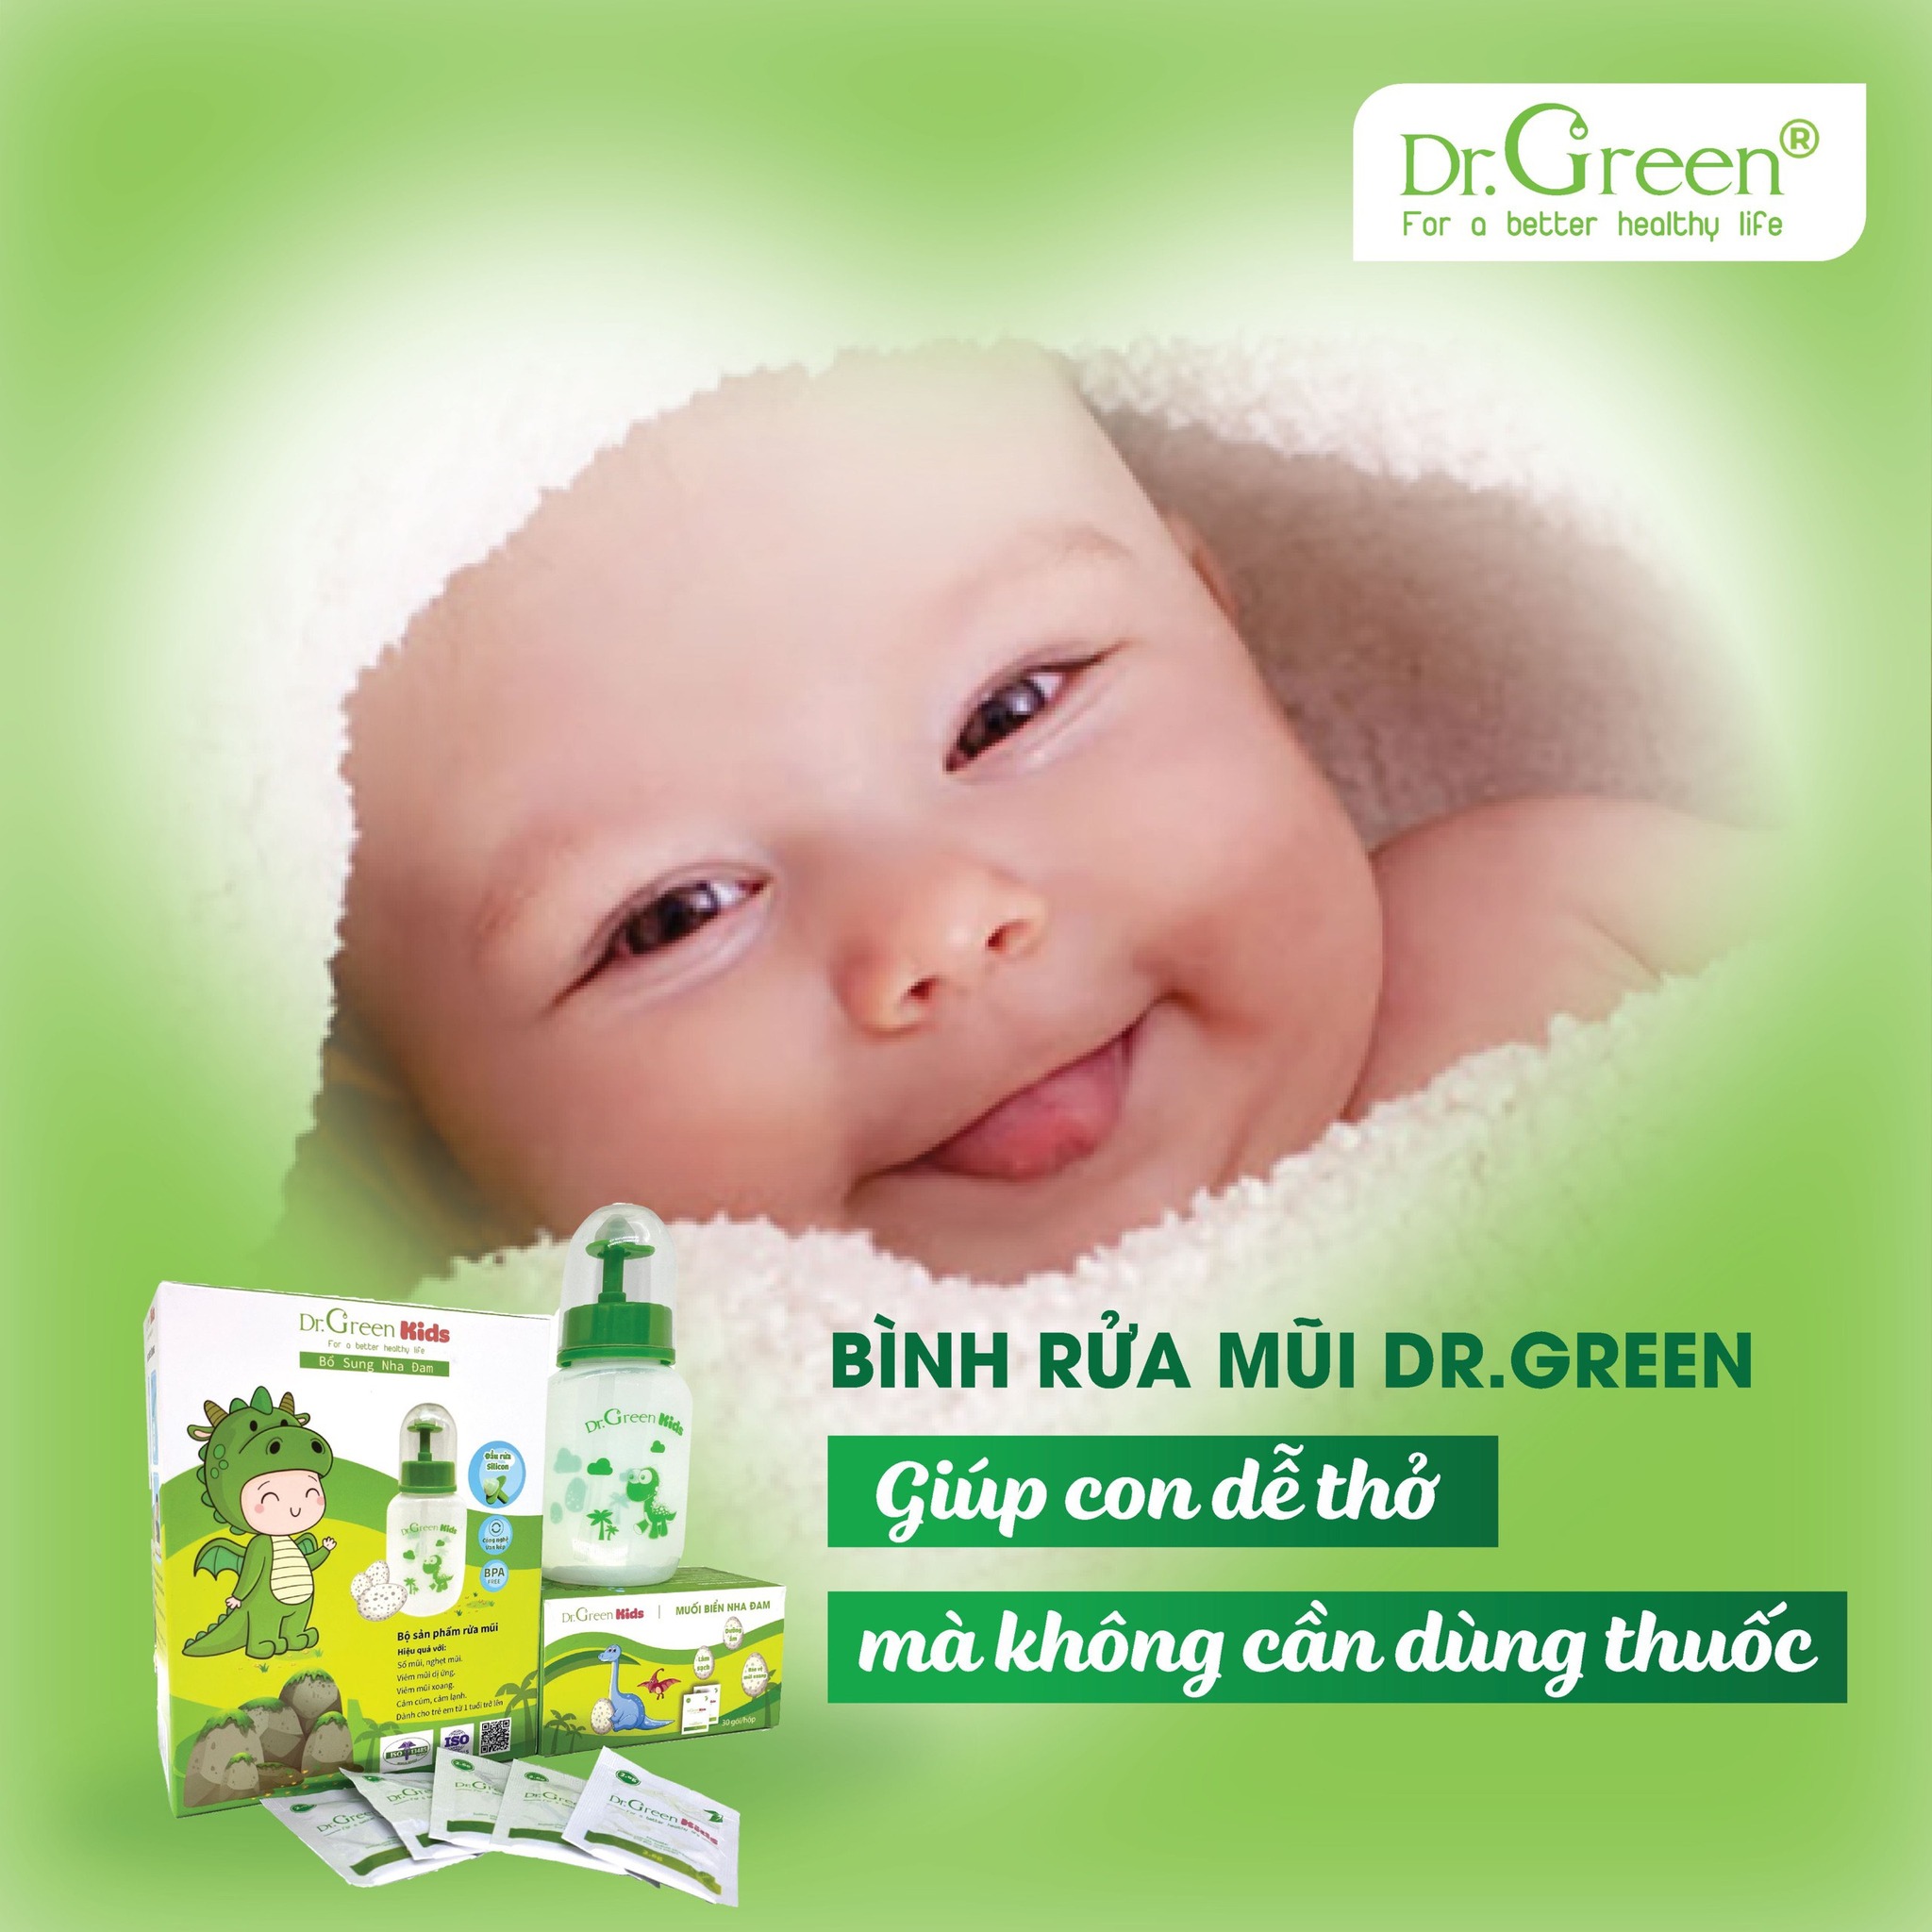 Bình rửa mũi trẻ sơ sinh: Sự an toàn và hiệu quả cho sức khỏe bé